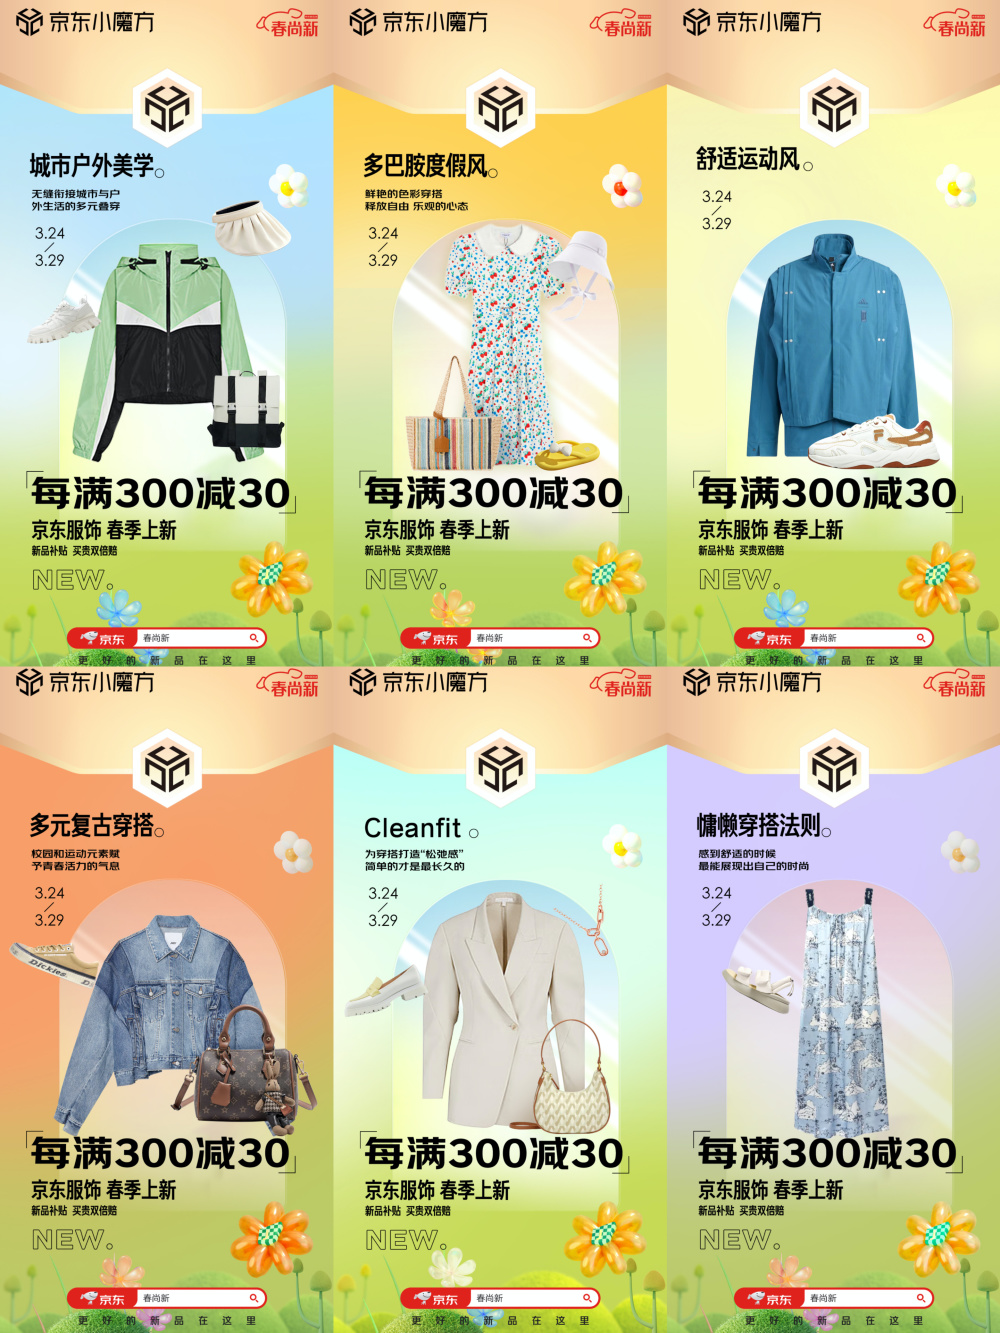 京东服饰“春尚新”上线 发布六大主题专区解锁春日穿搭新趋势